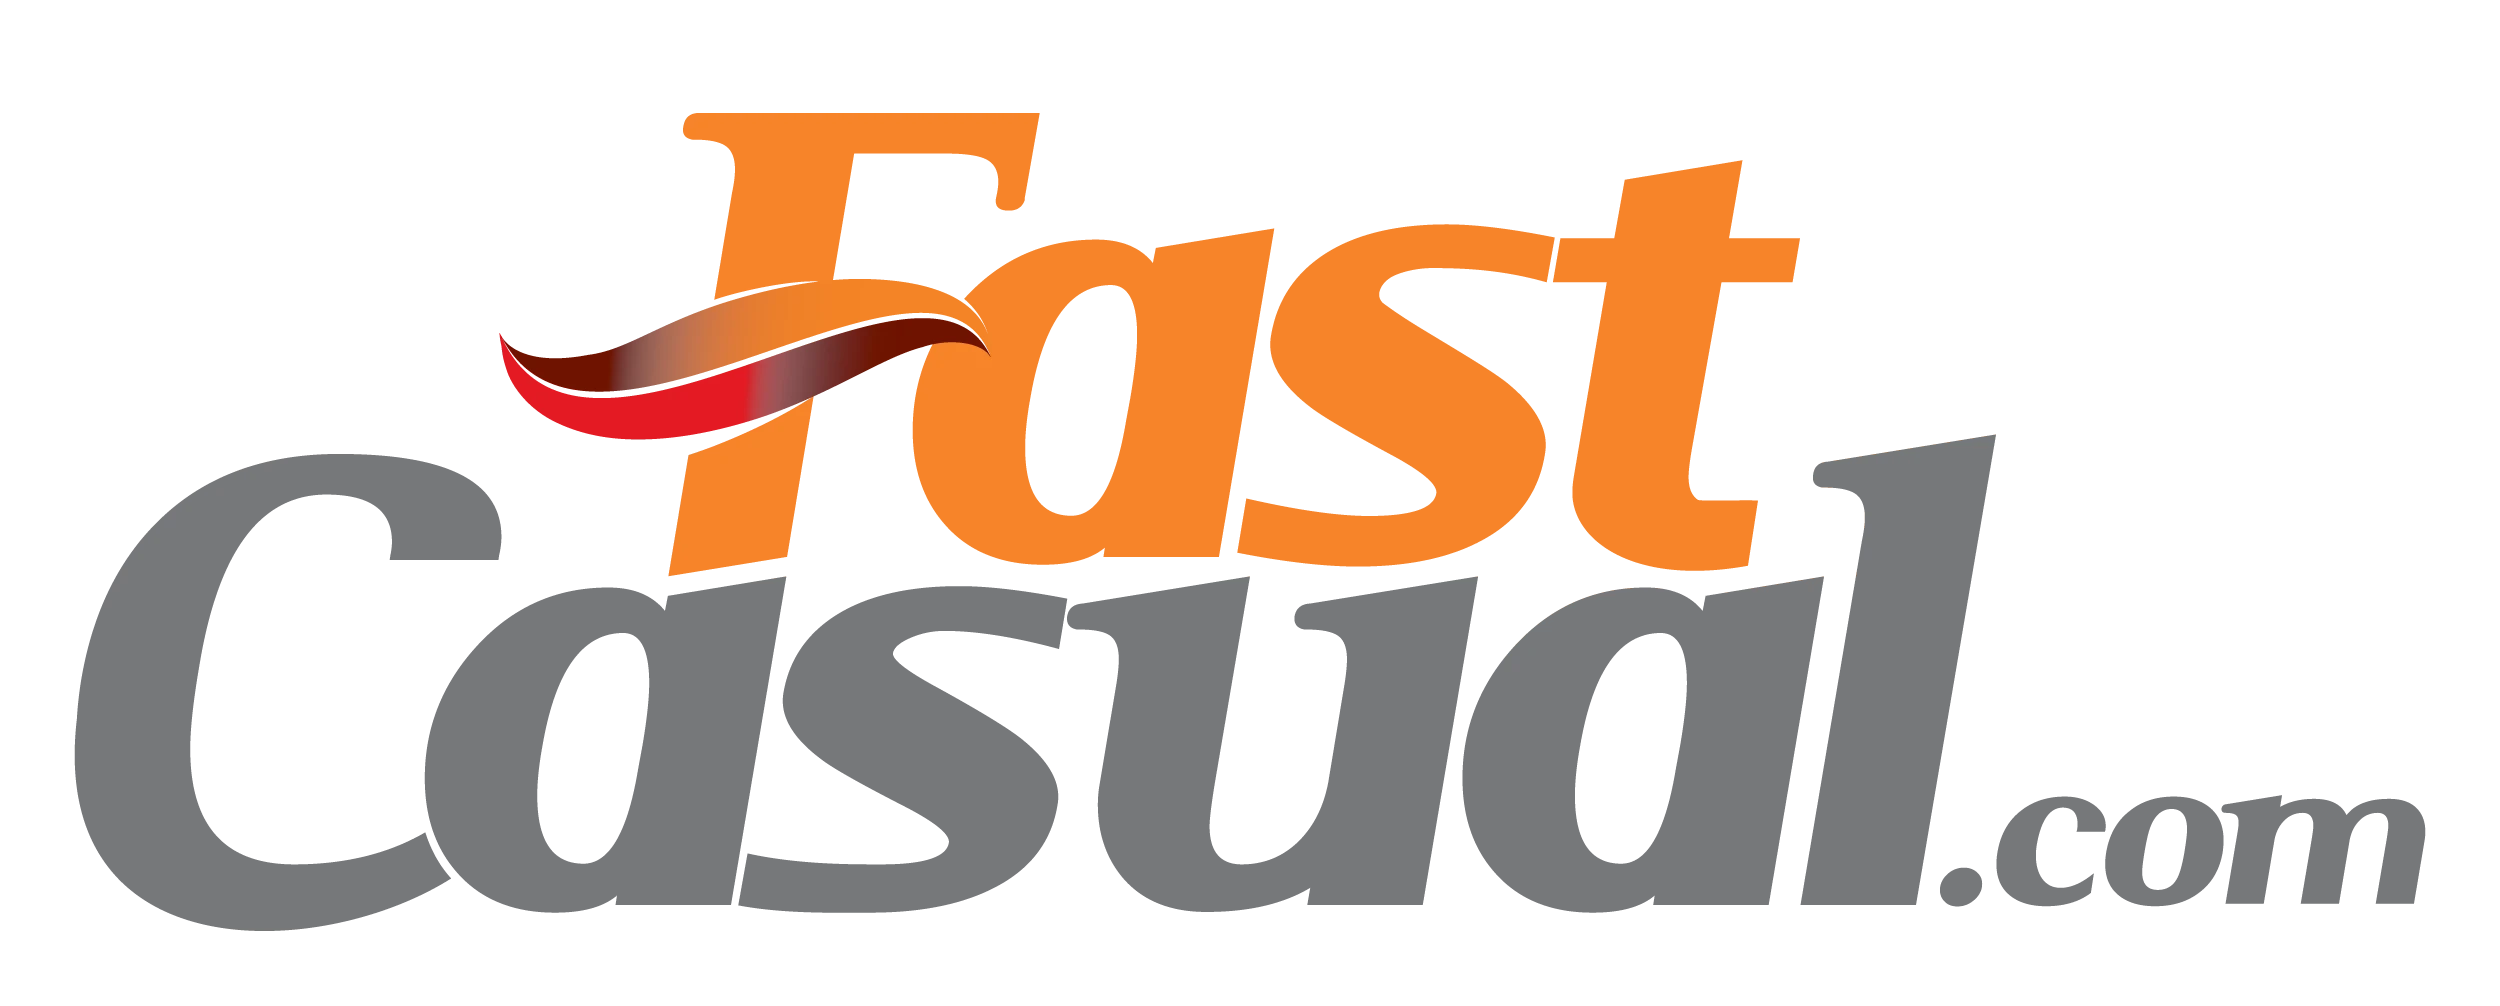 Fast Casual.com Logo